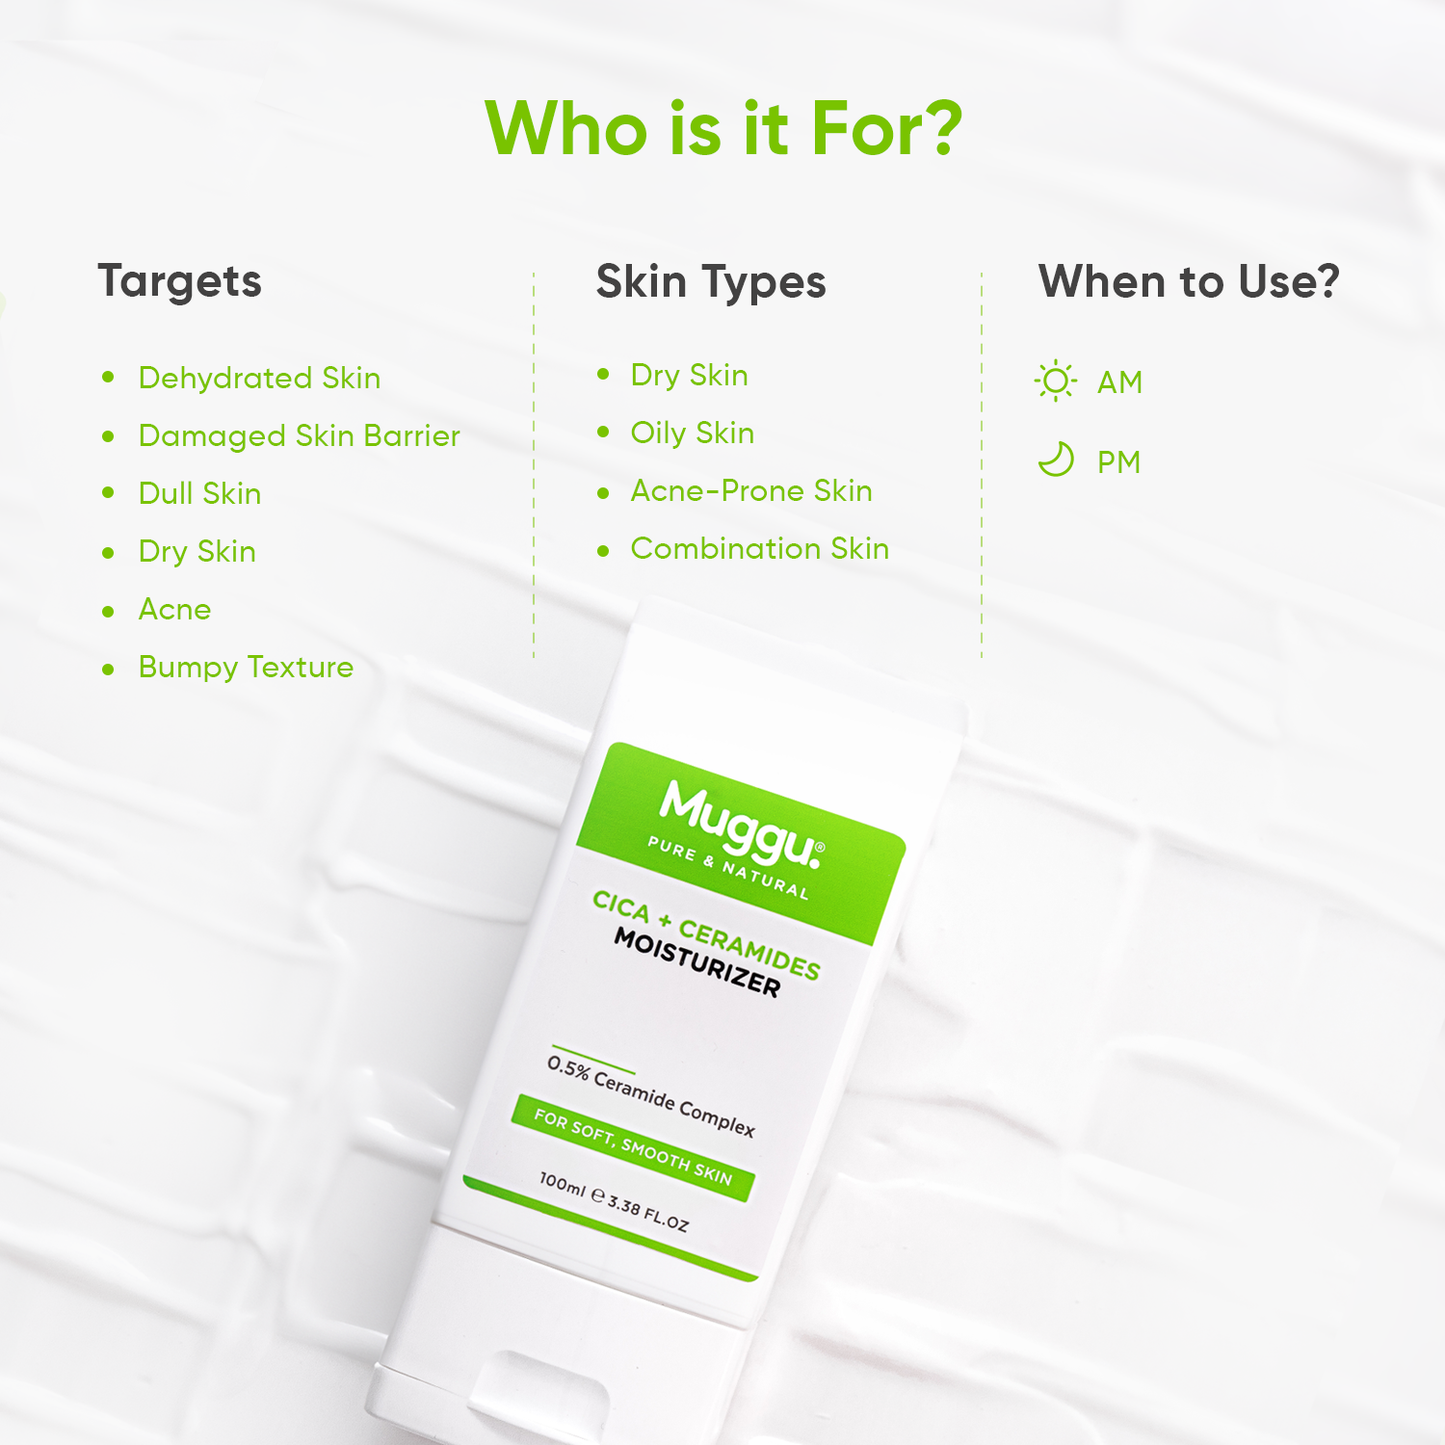 Cica-Ceramides-Moisturizer--for-acne-prone-skin